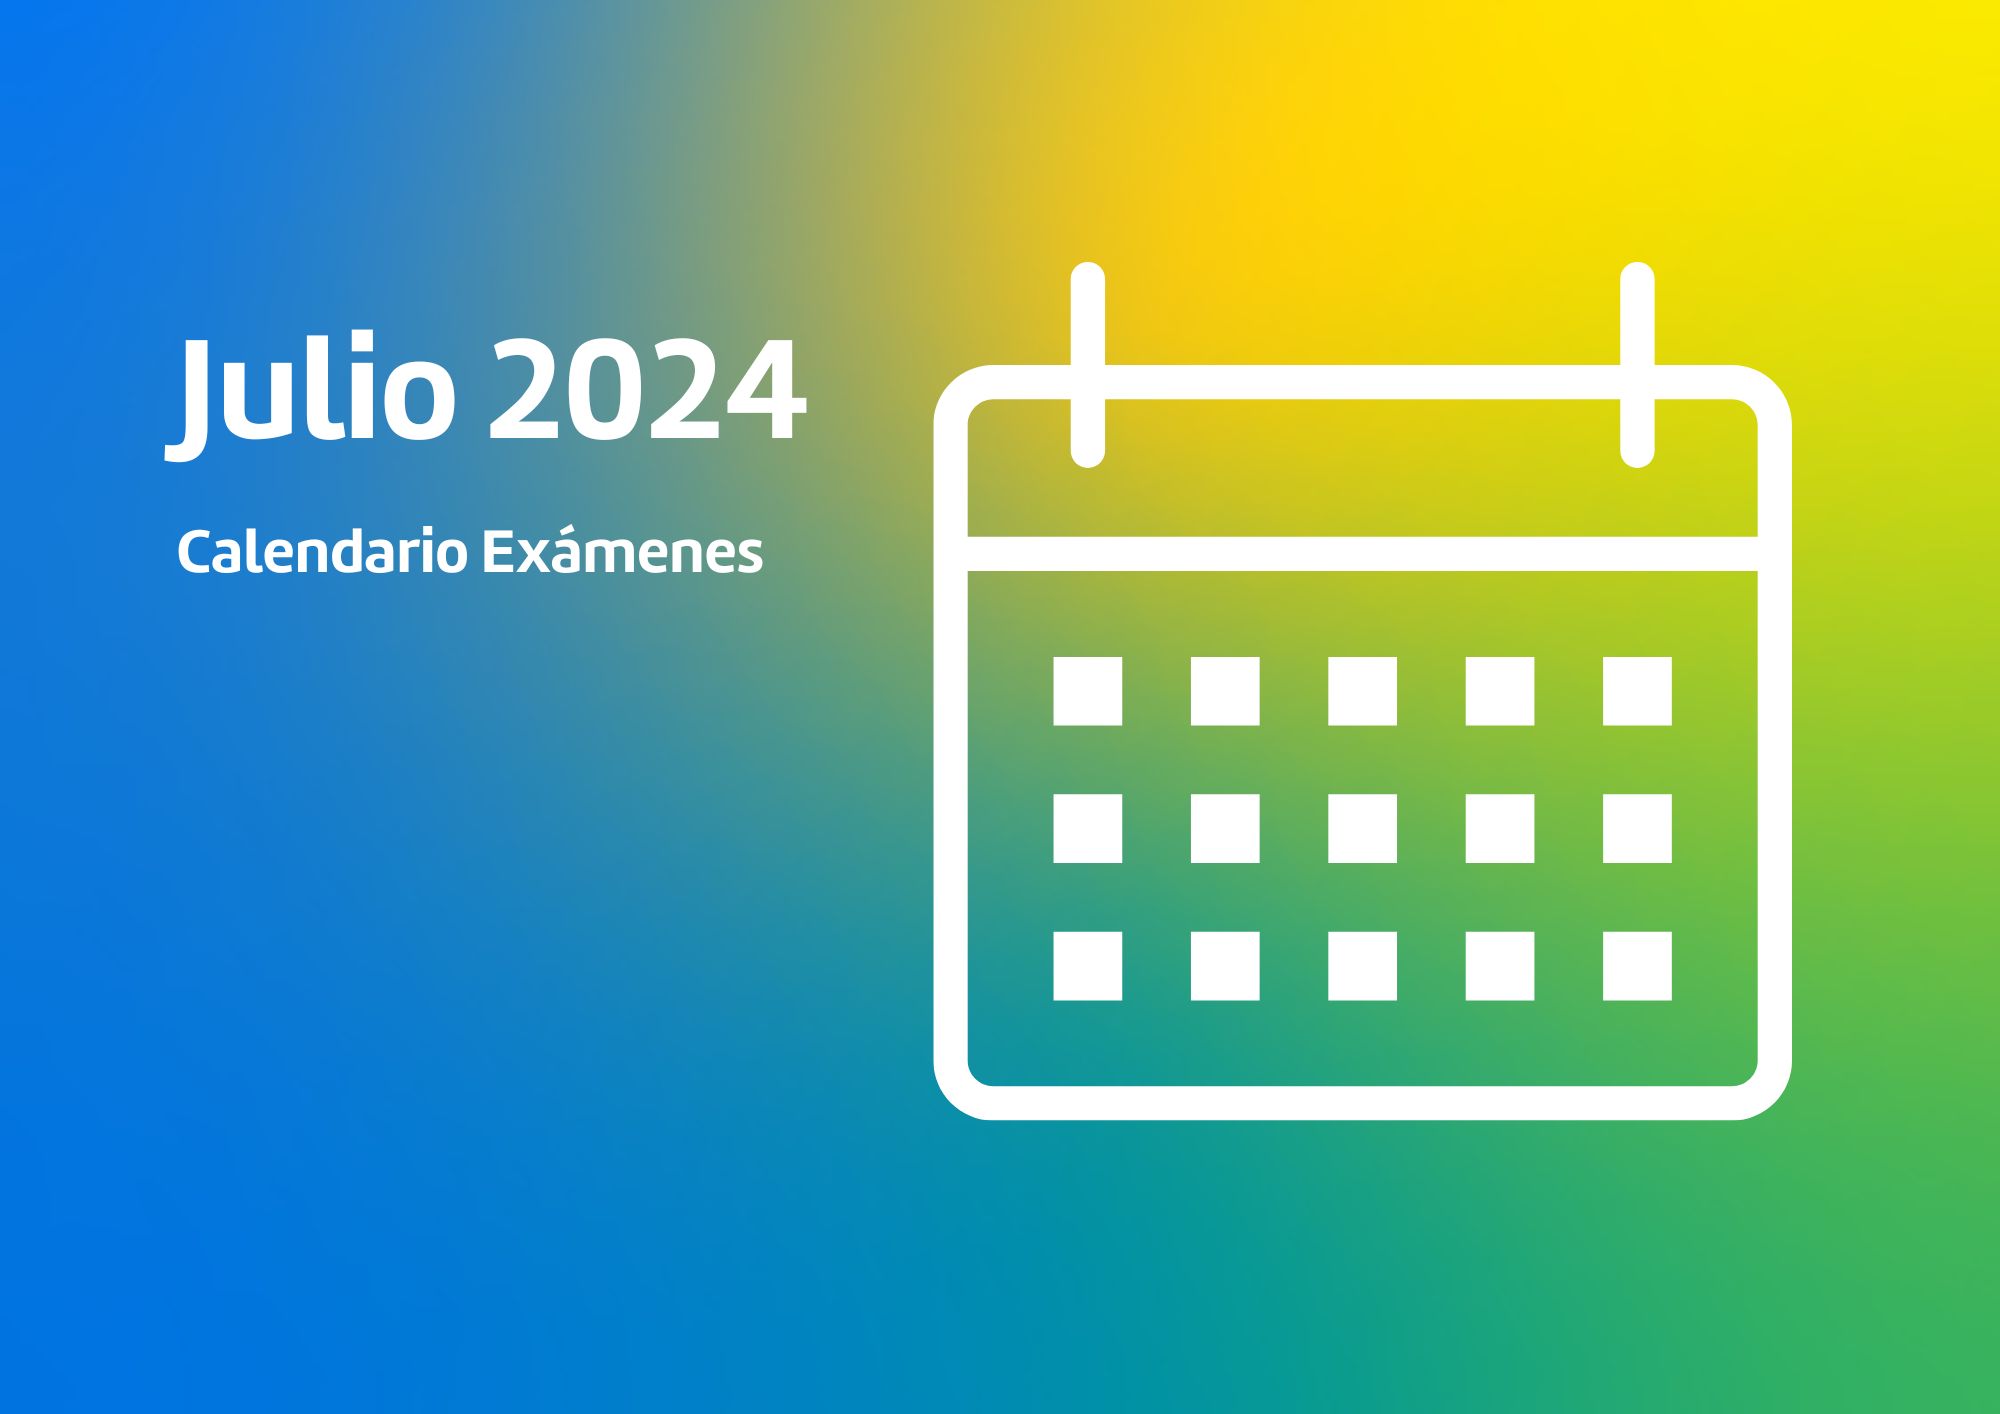 Calendario de exámenes Julio 2024